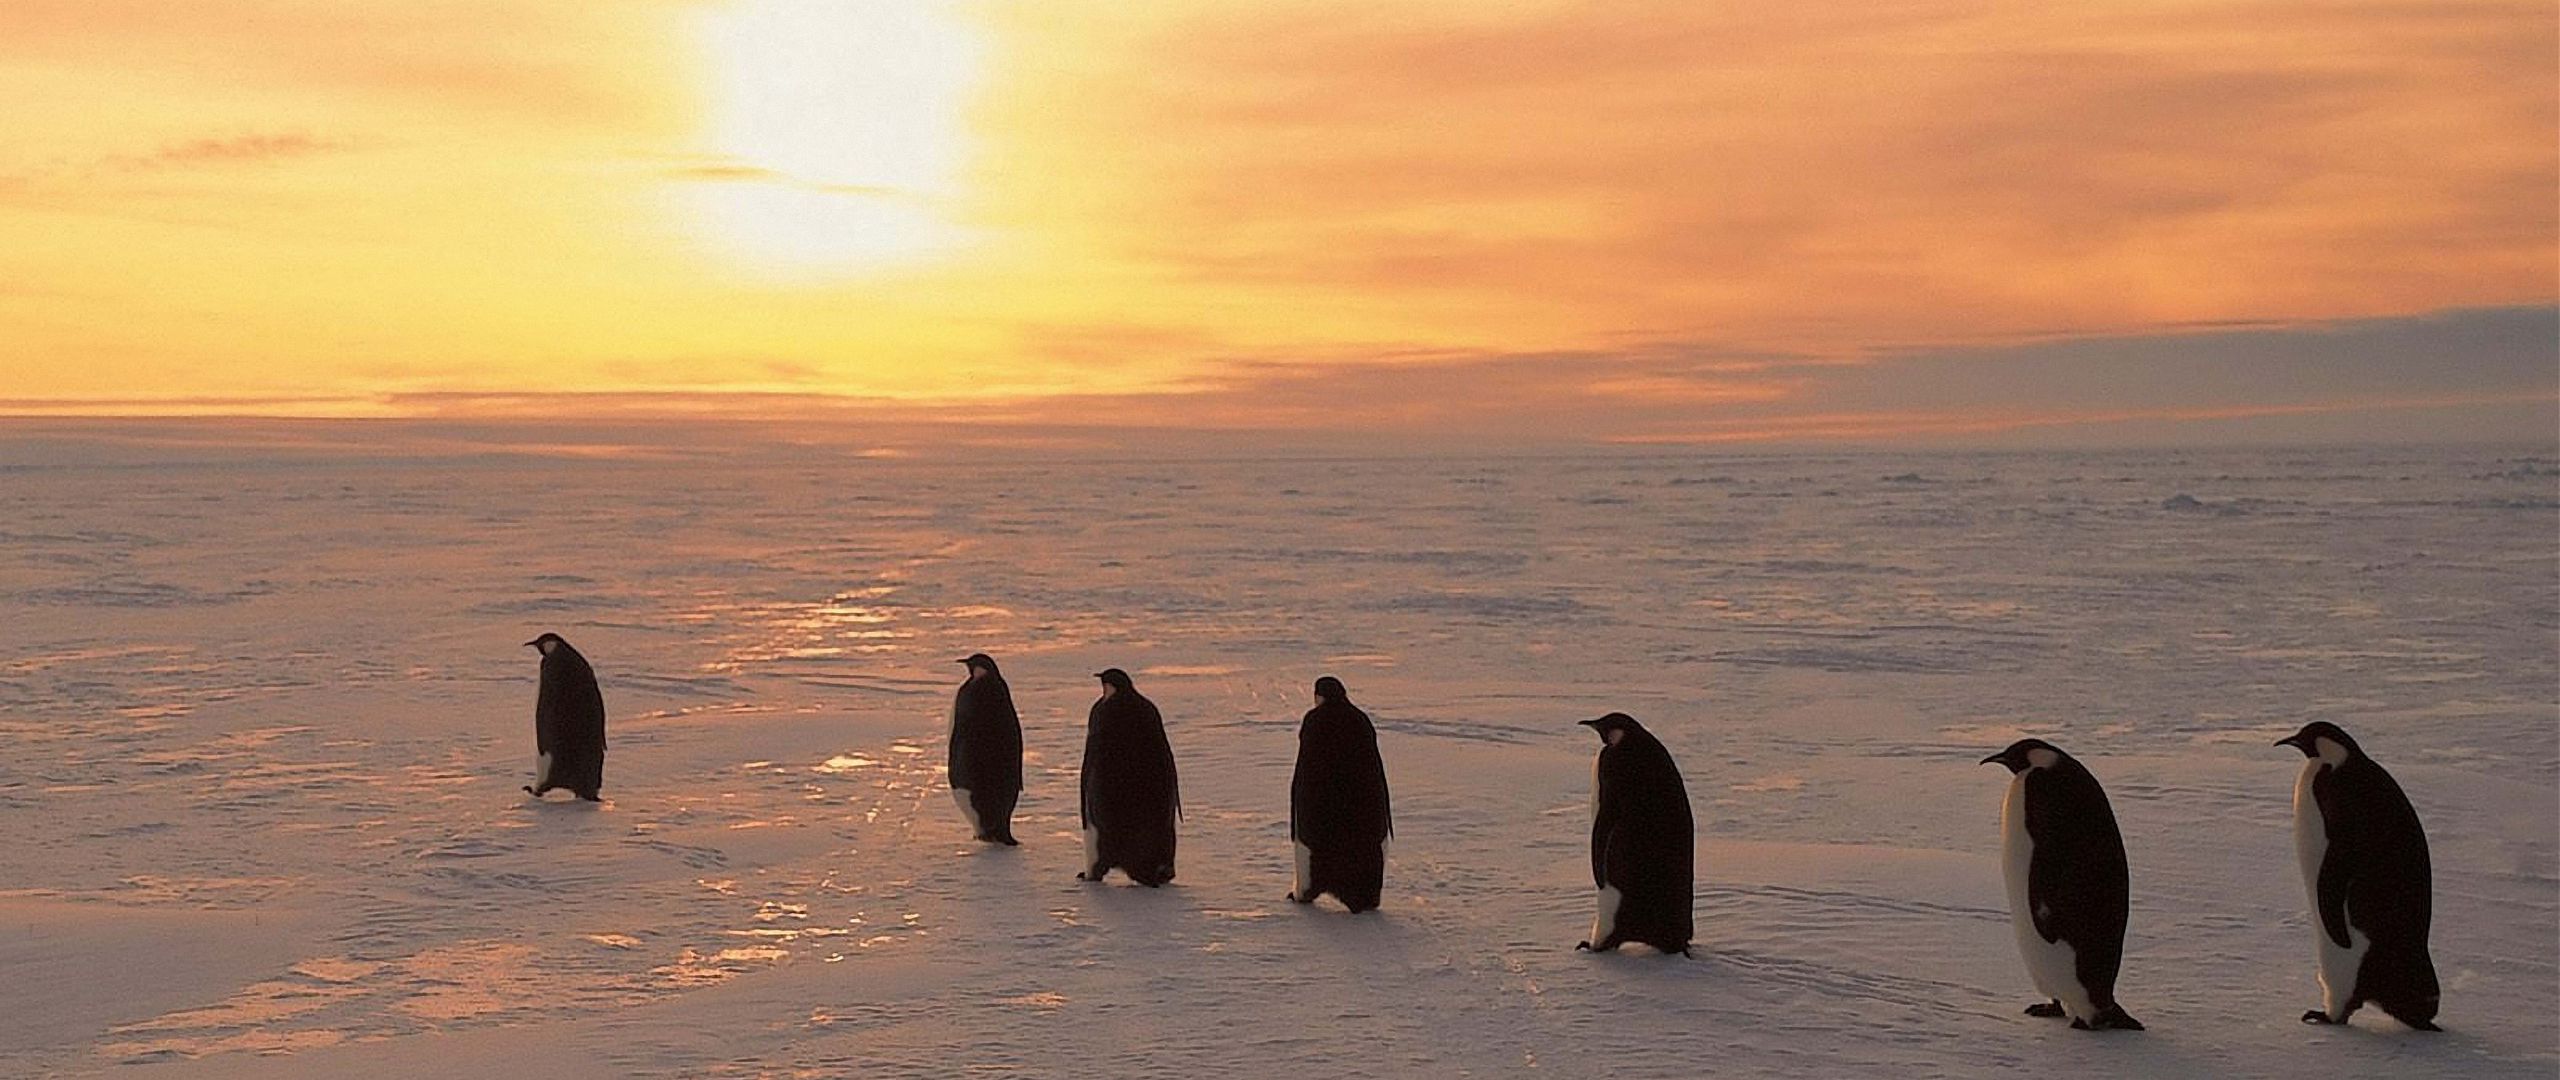 Пингвины на севере. Пингвины от севера к югу расположить. Пингвины идут стаей. Расположите пингвинов с севера на Юг.